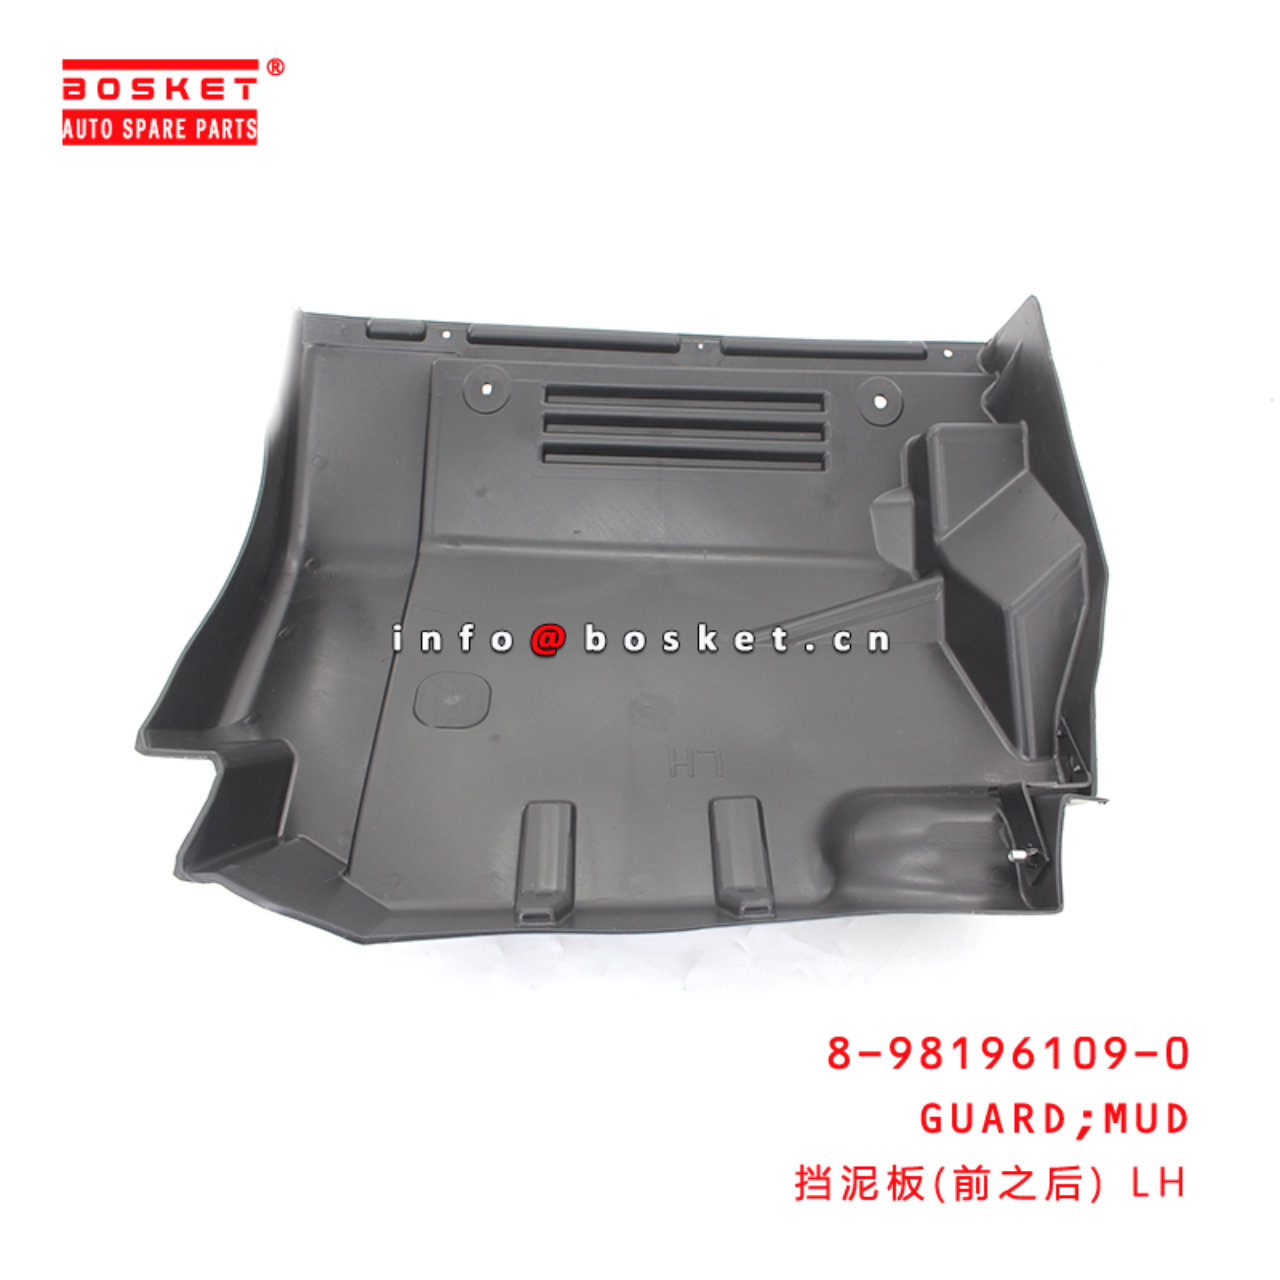 8-98196109-0 Mud Guard Suitable for ISUZU VC46 6UZ1 8981961090